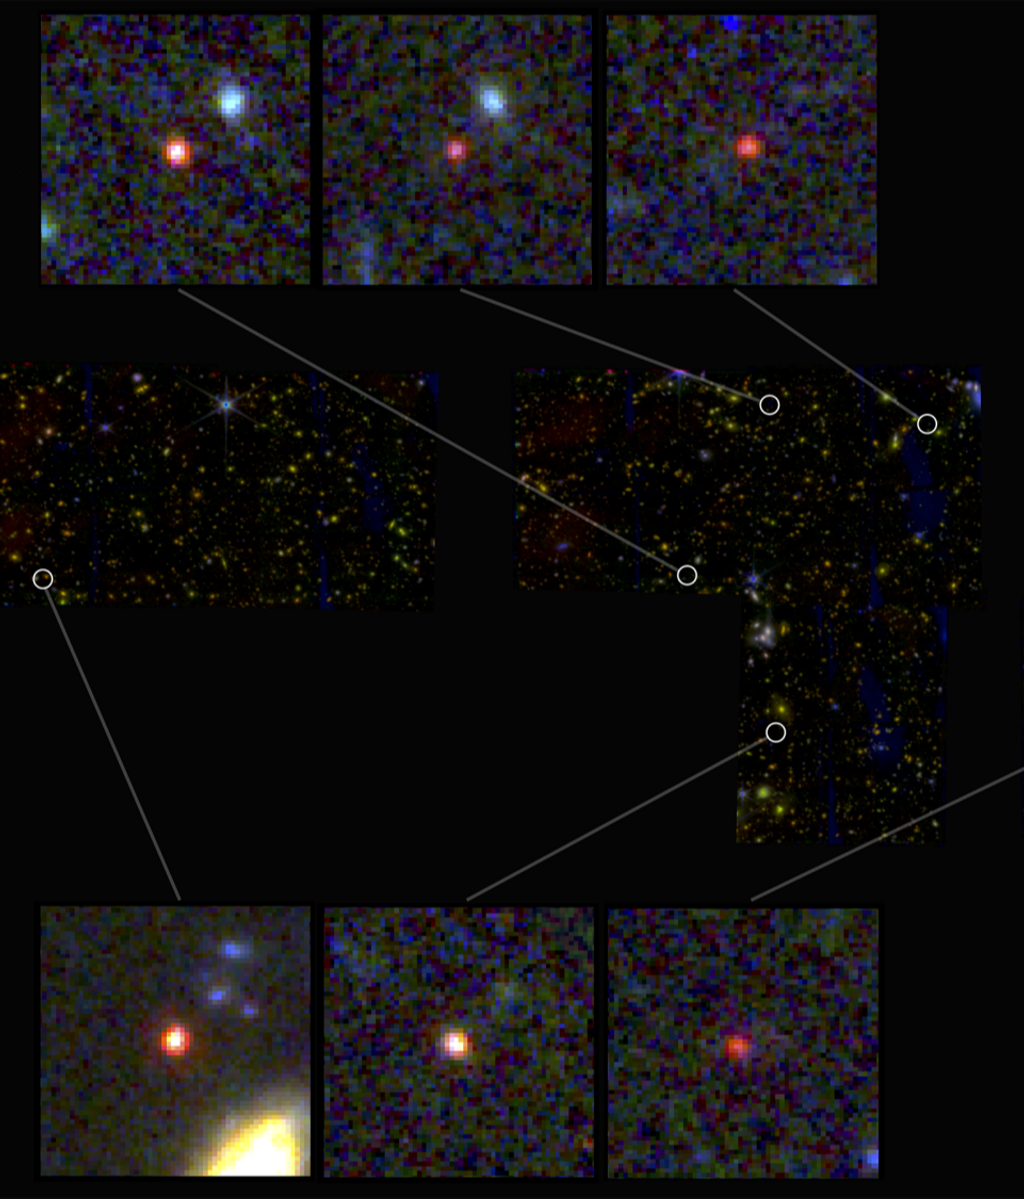 Imágenes de seis candidatas a galaxias masivas, vistas 500-700 millones de años después del Big Bang